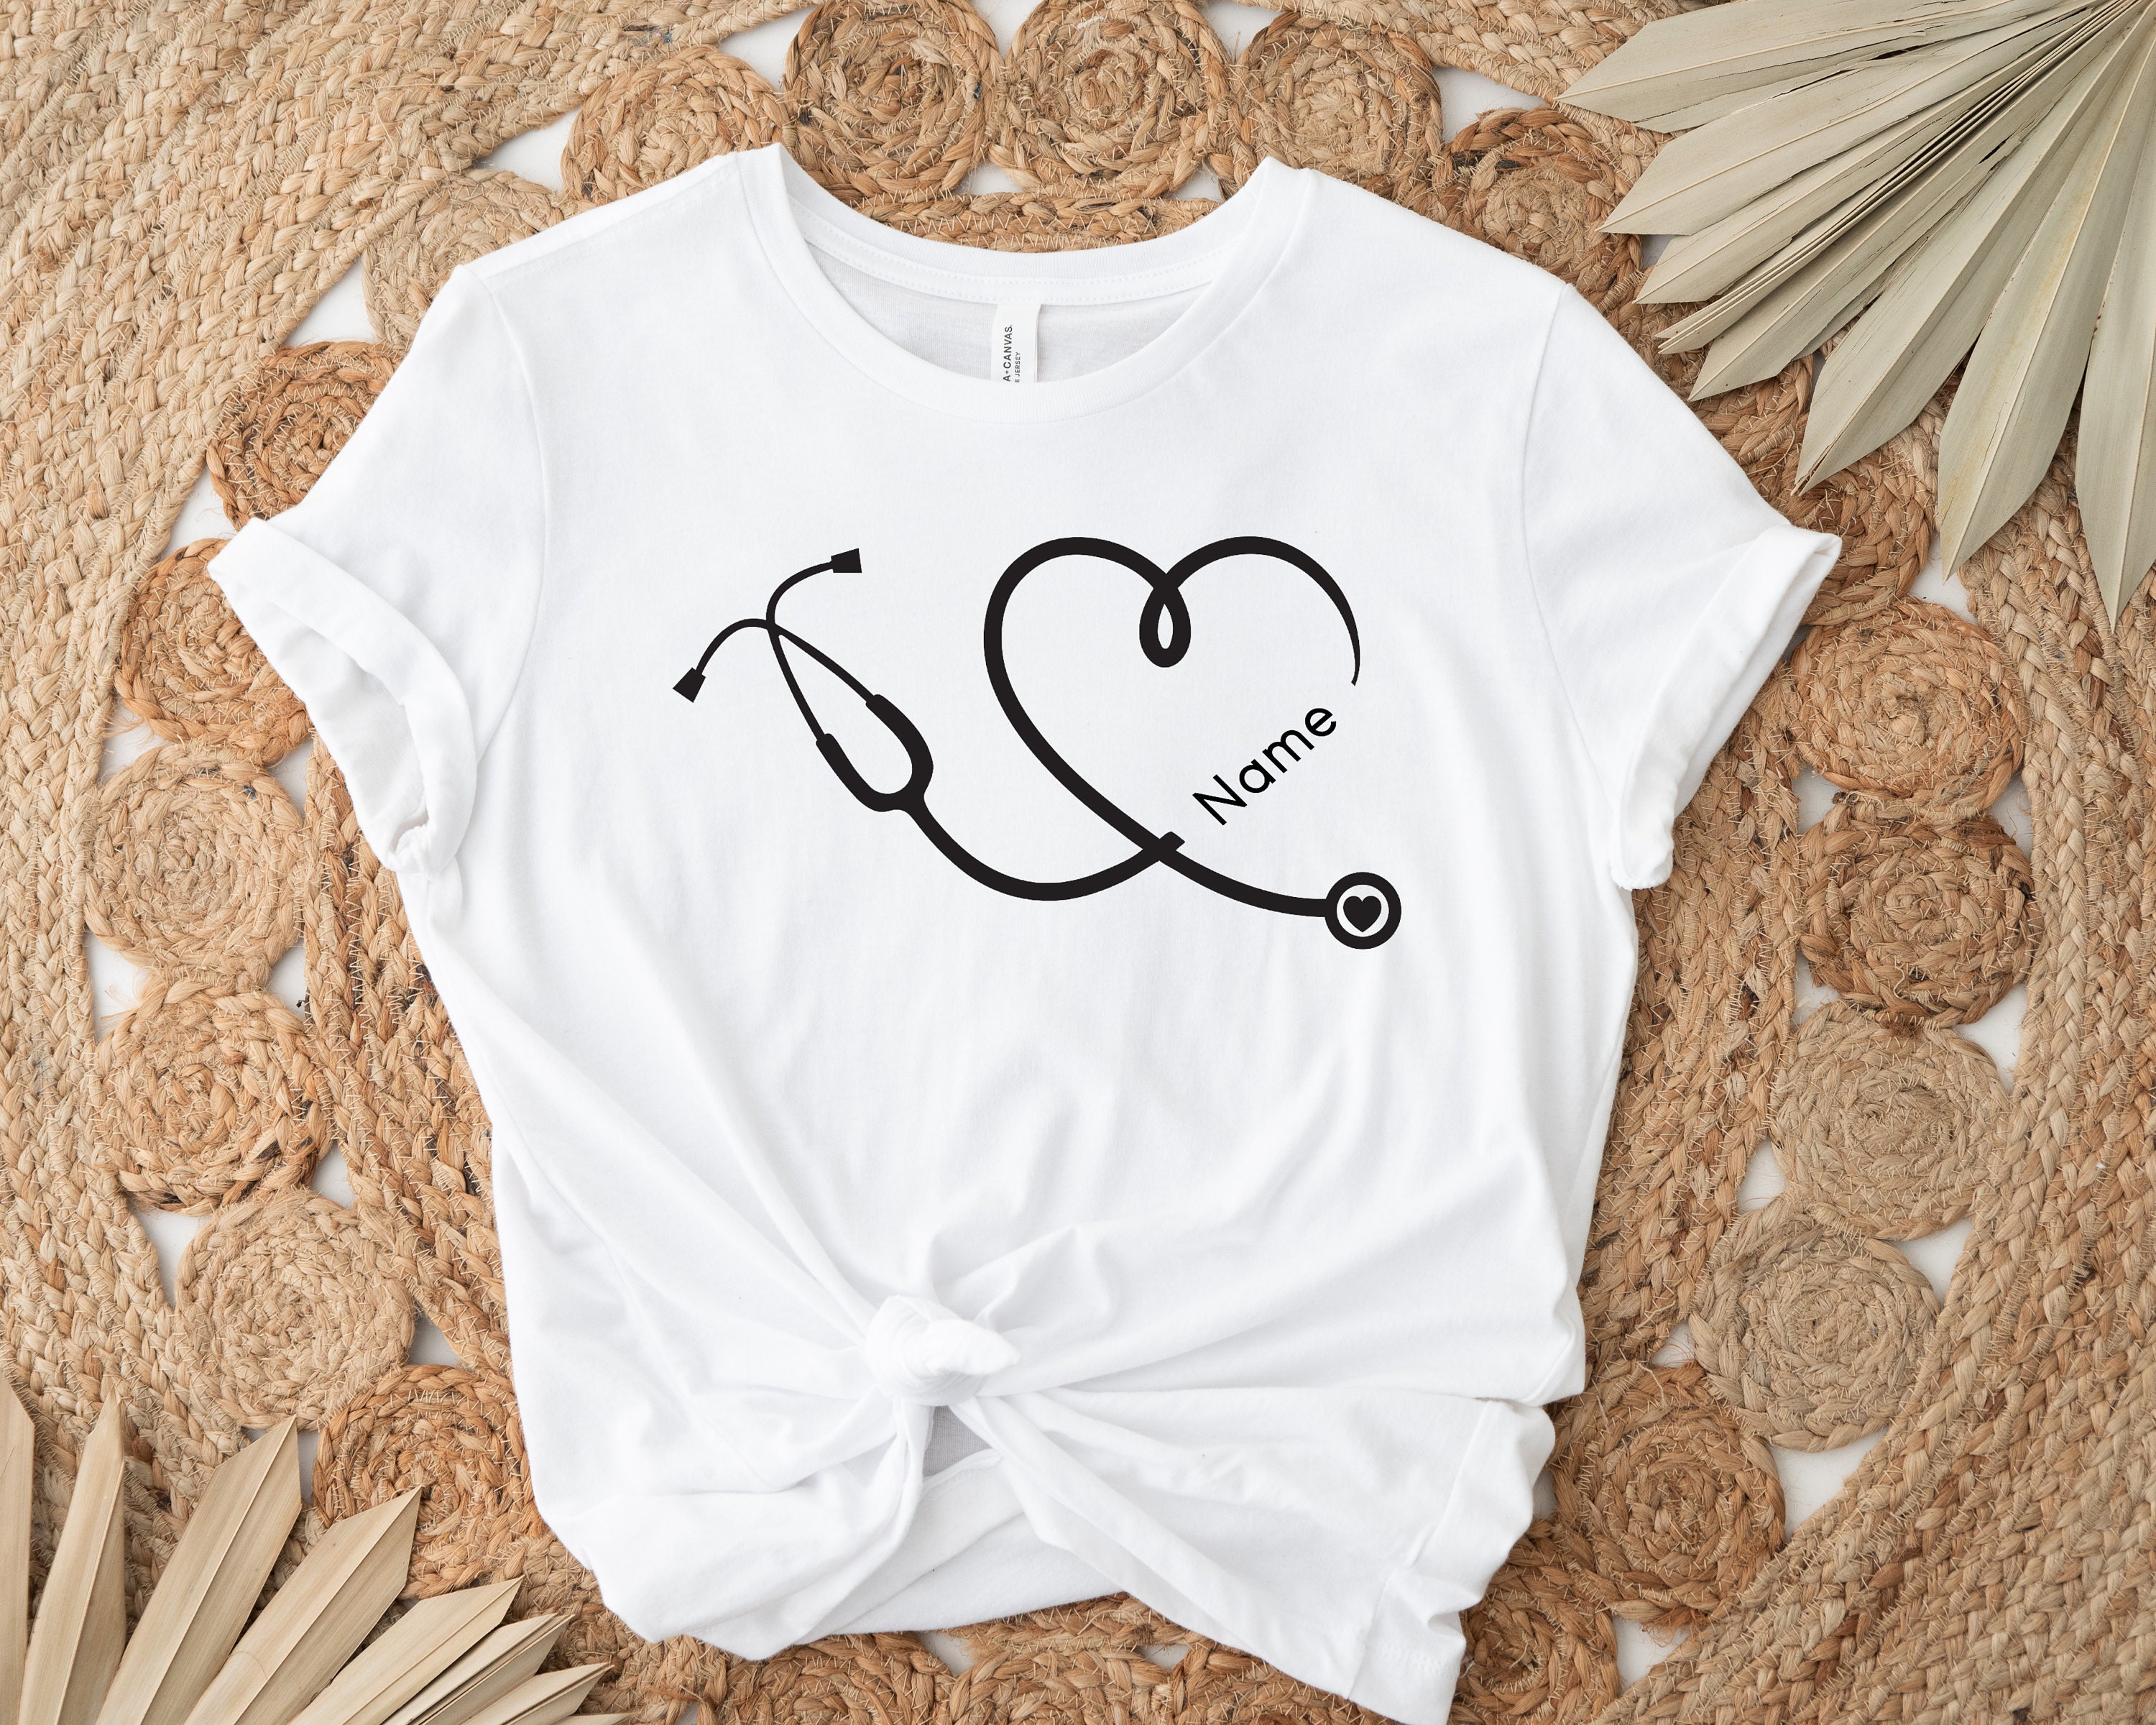 Nurse Shirt, Nurse Stethoscope T-Shirt, Nurse Week Shirt